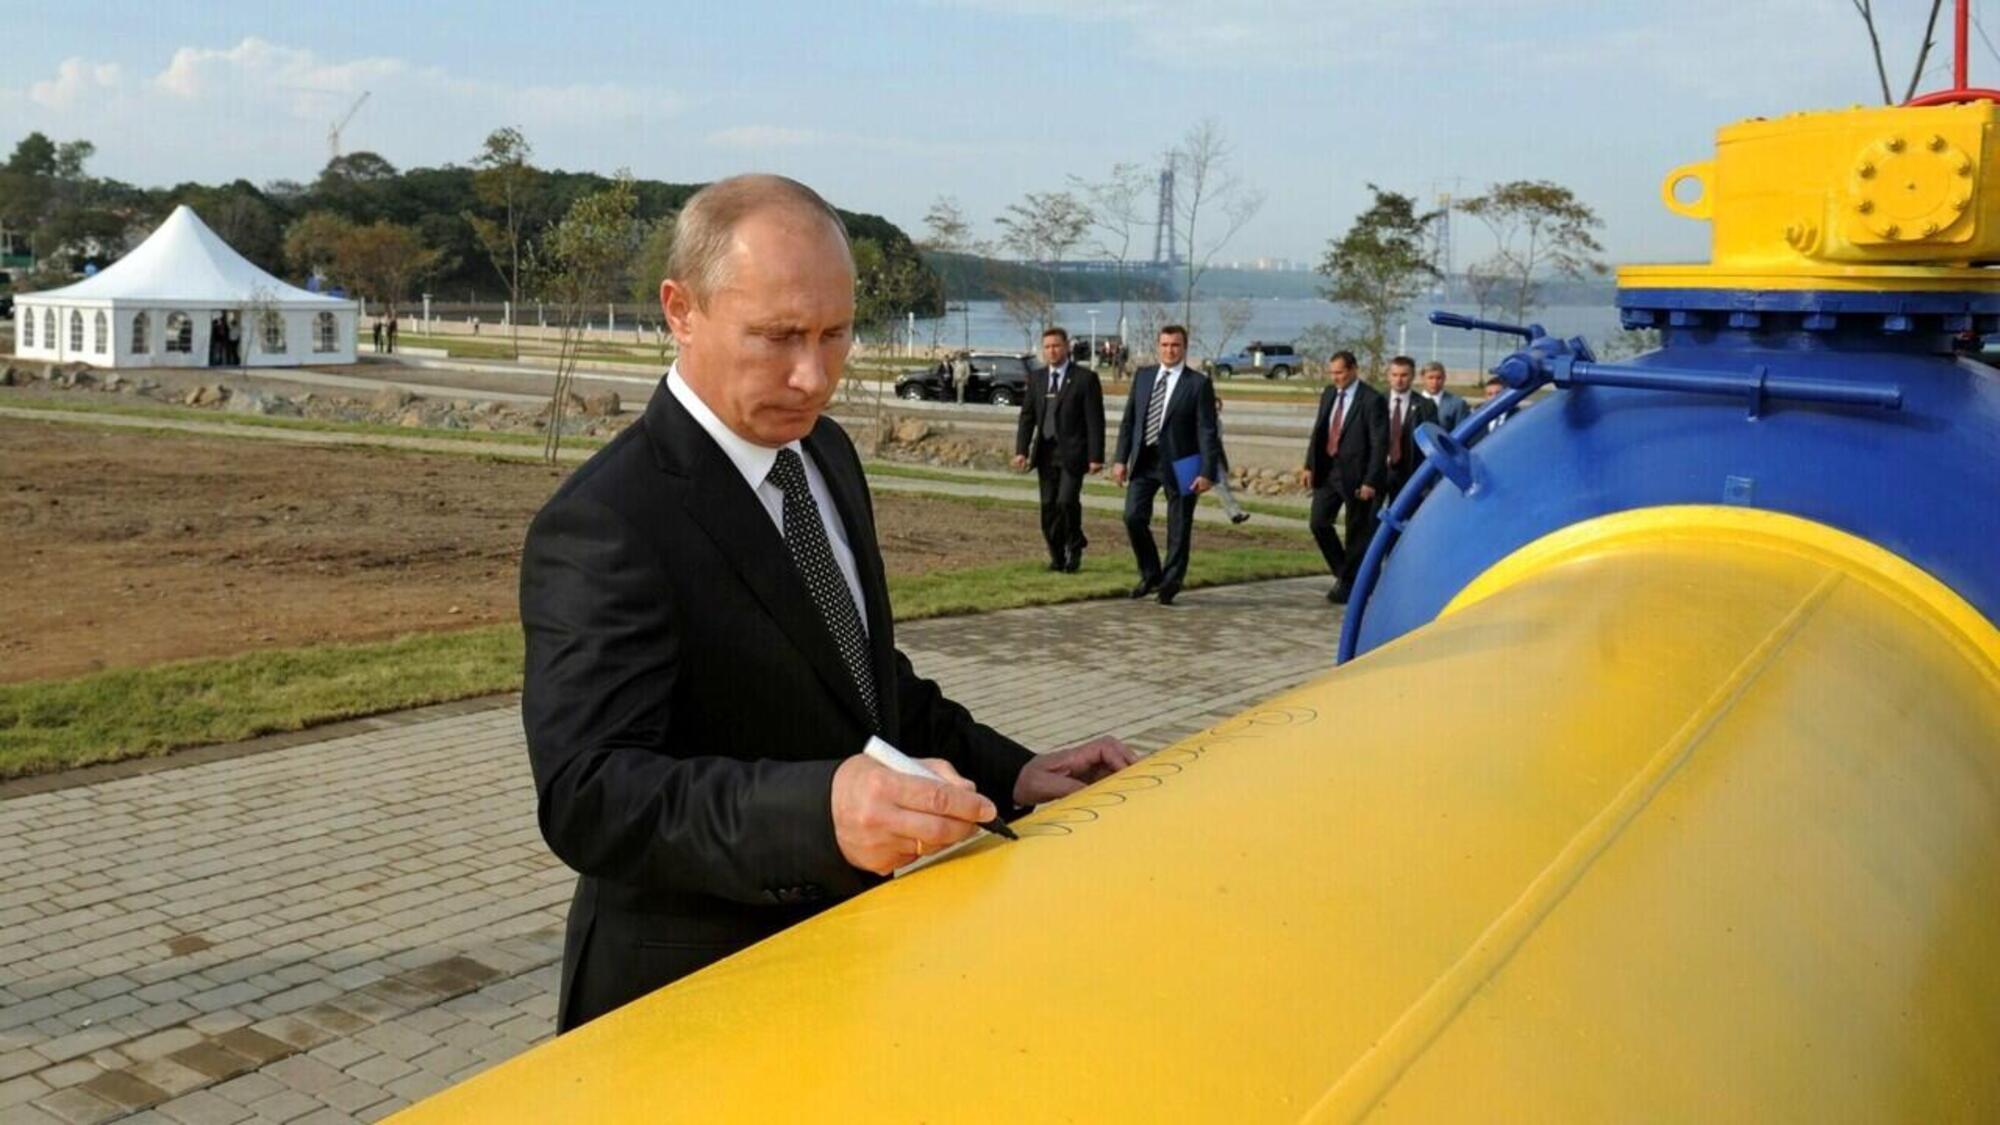 Putin gas gasdotto